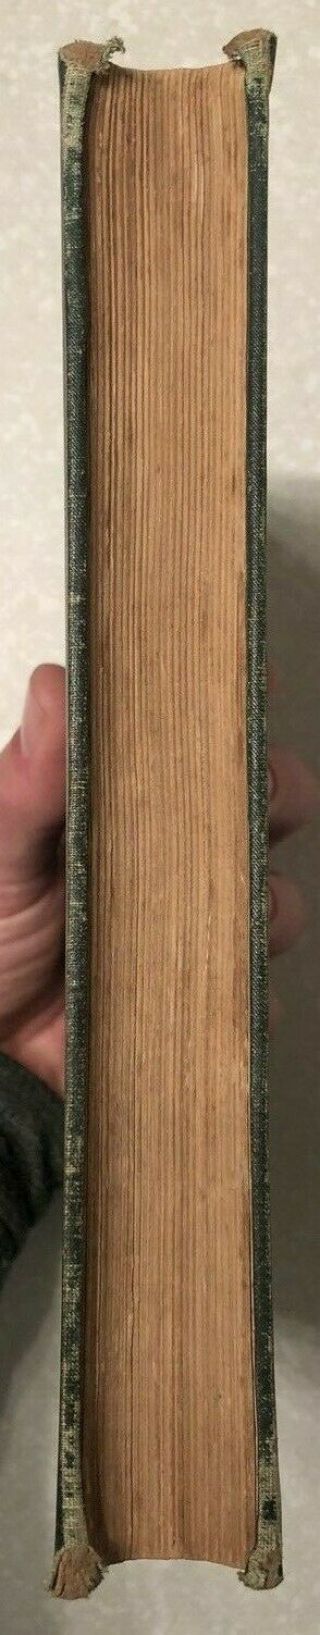 THE ADVENTURES OF HUCKLEBERRY FINN,  MARK TWAIN,  1ST ED/EARLY PRINT,  CR 1884,  VG 6